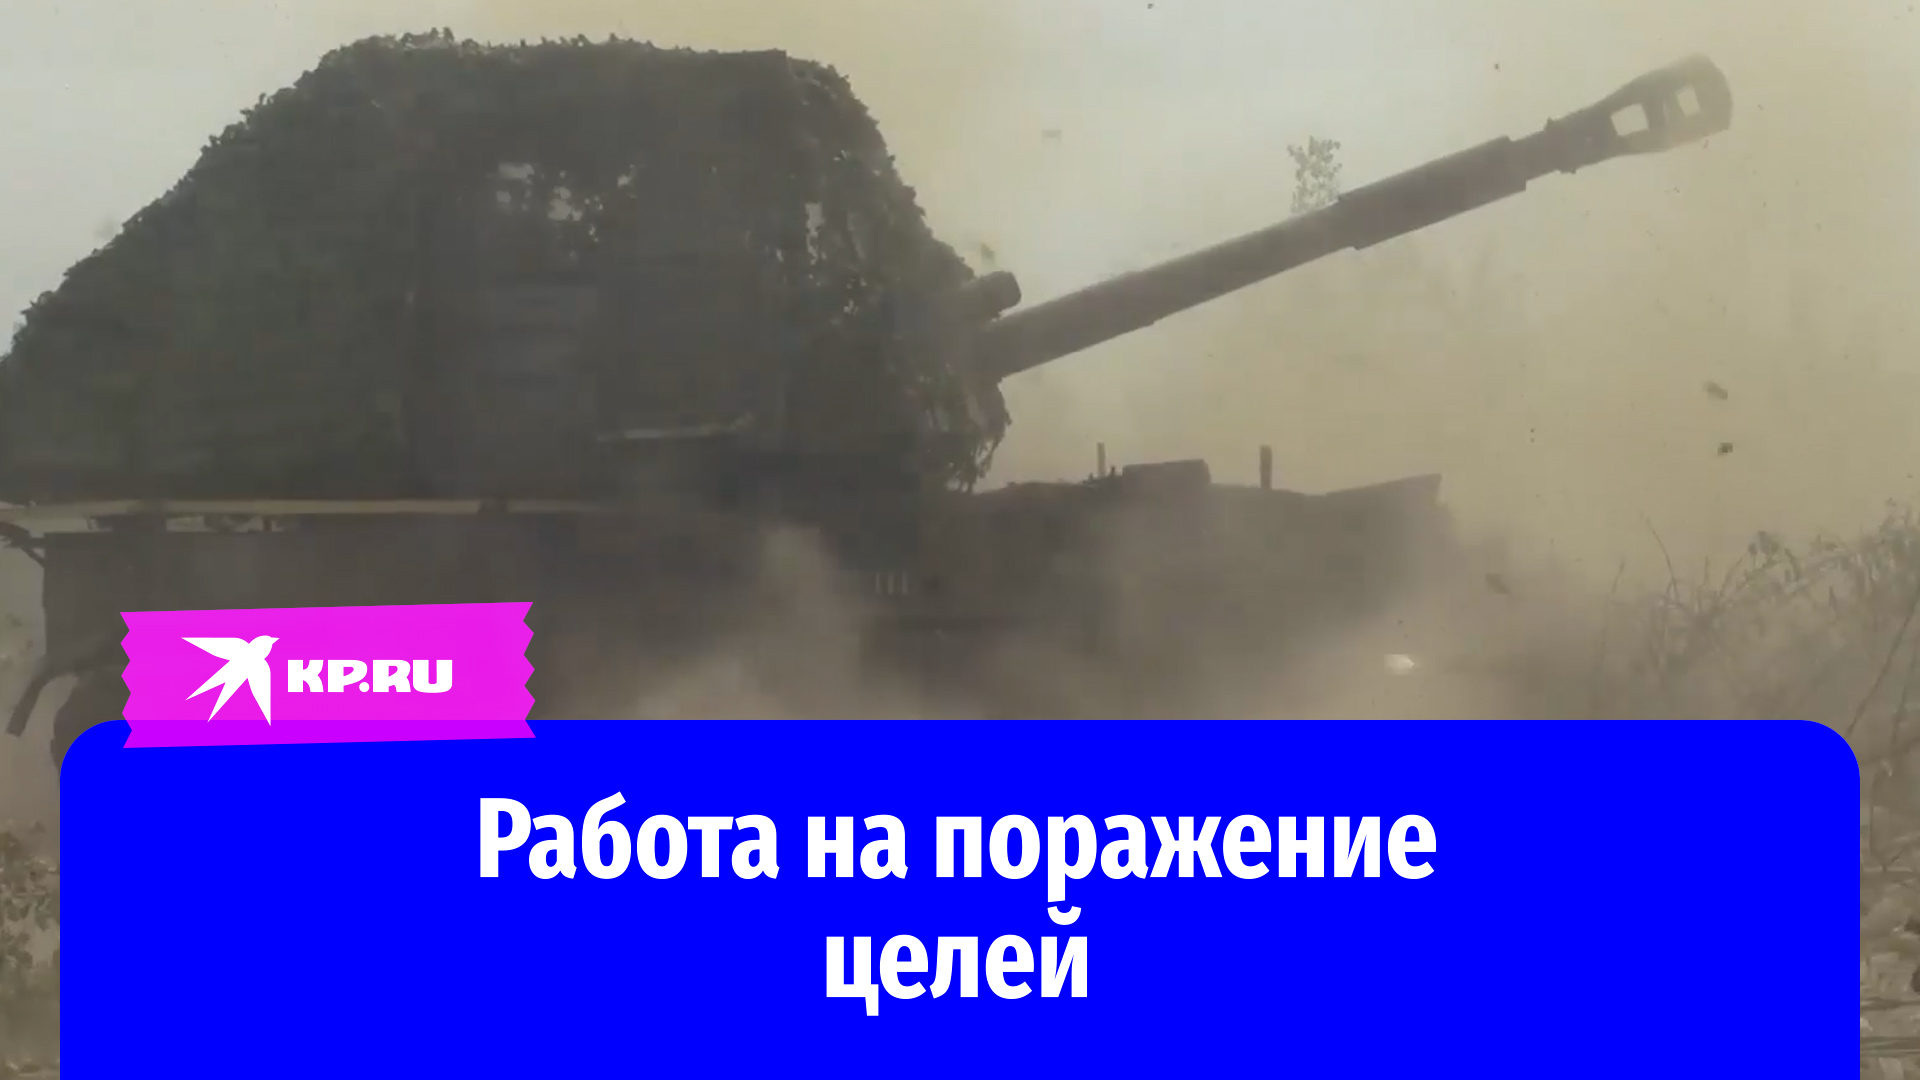 Боевые кадры изнутри установки: «Акация» уничтожает
бронетехнику ВСУ